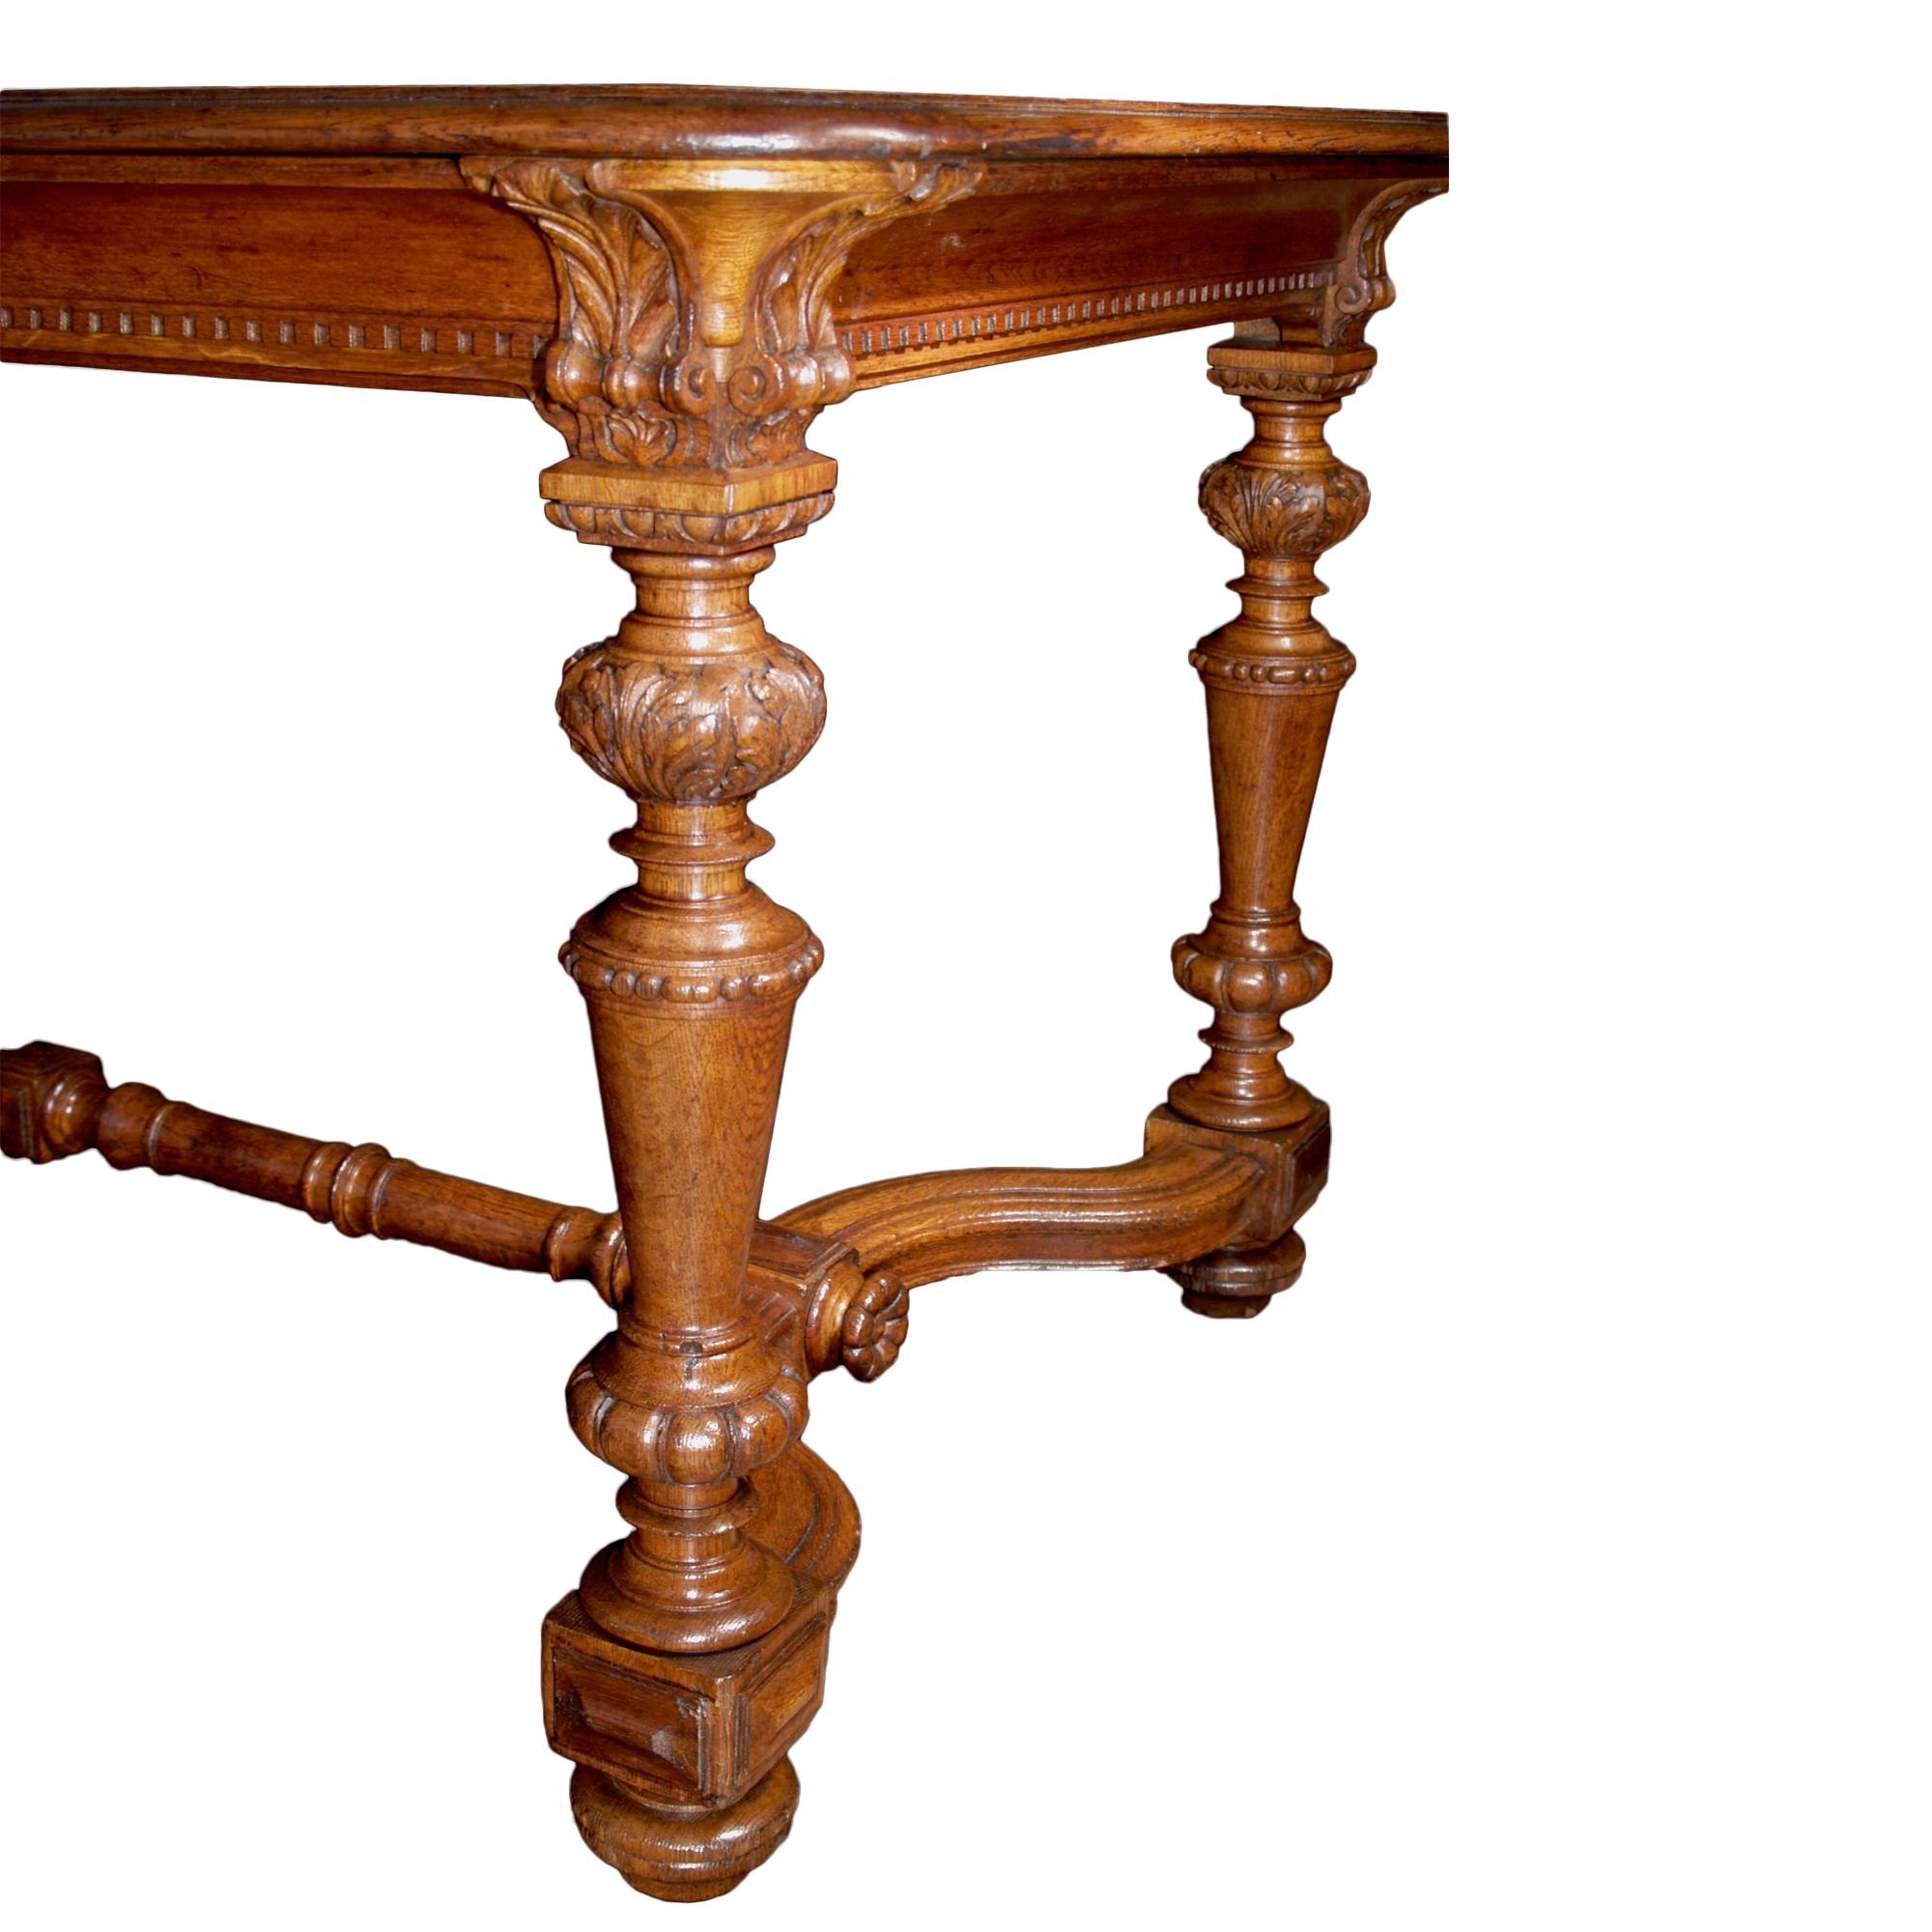 Une jolie table de salle à manger de style Louis XIV du 19ème siècle en chêne couleur miel. Les pieds, sculptés à la manière d'un chapiteau corinthien, ont des formes balustres décorées de feuilles de gland et se terminent par des supports en forme